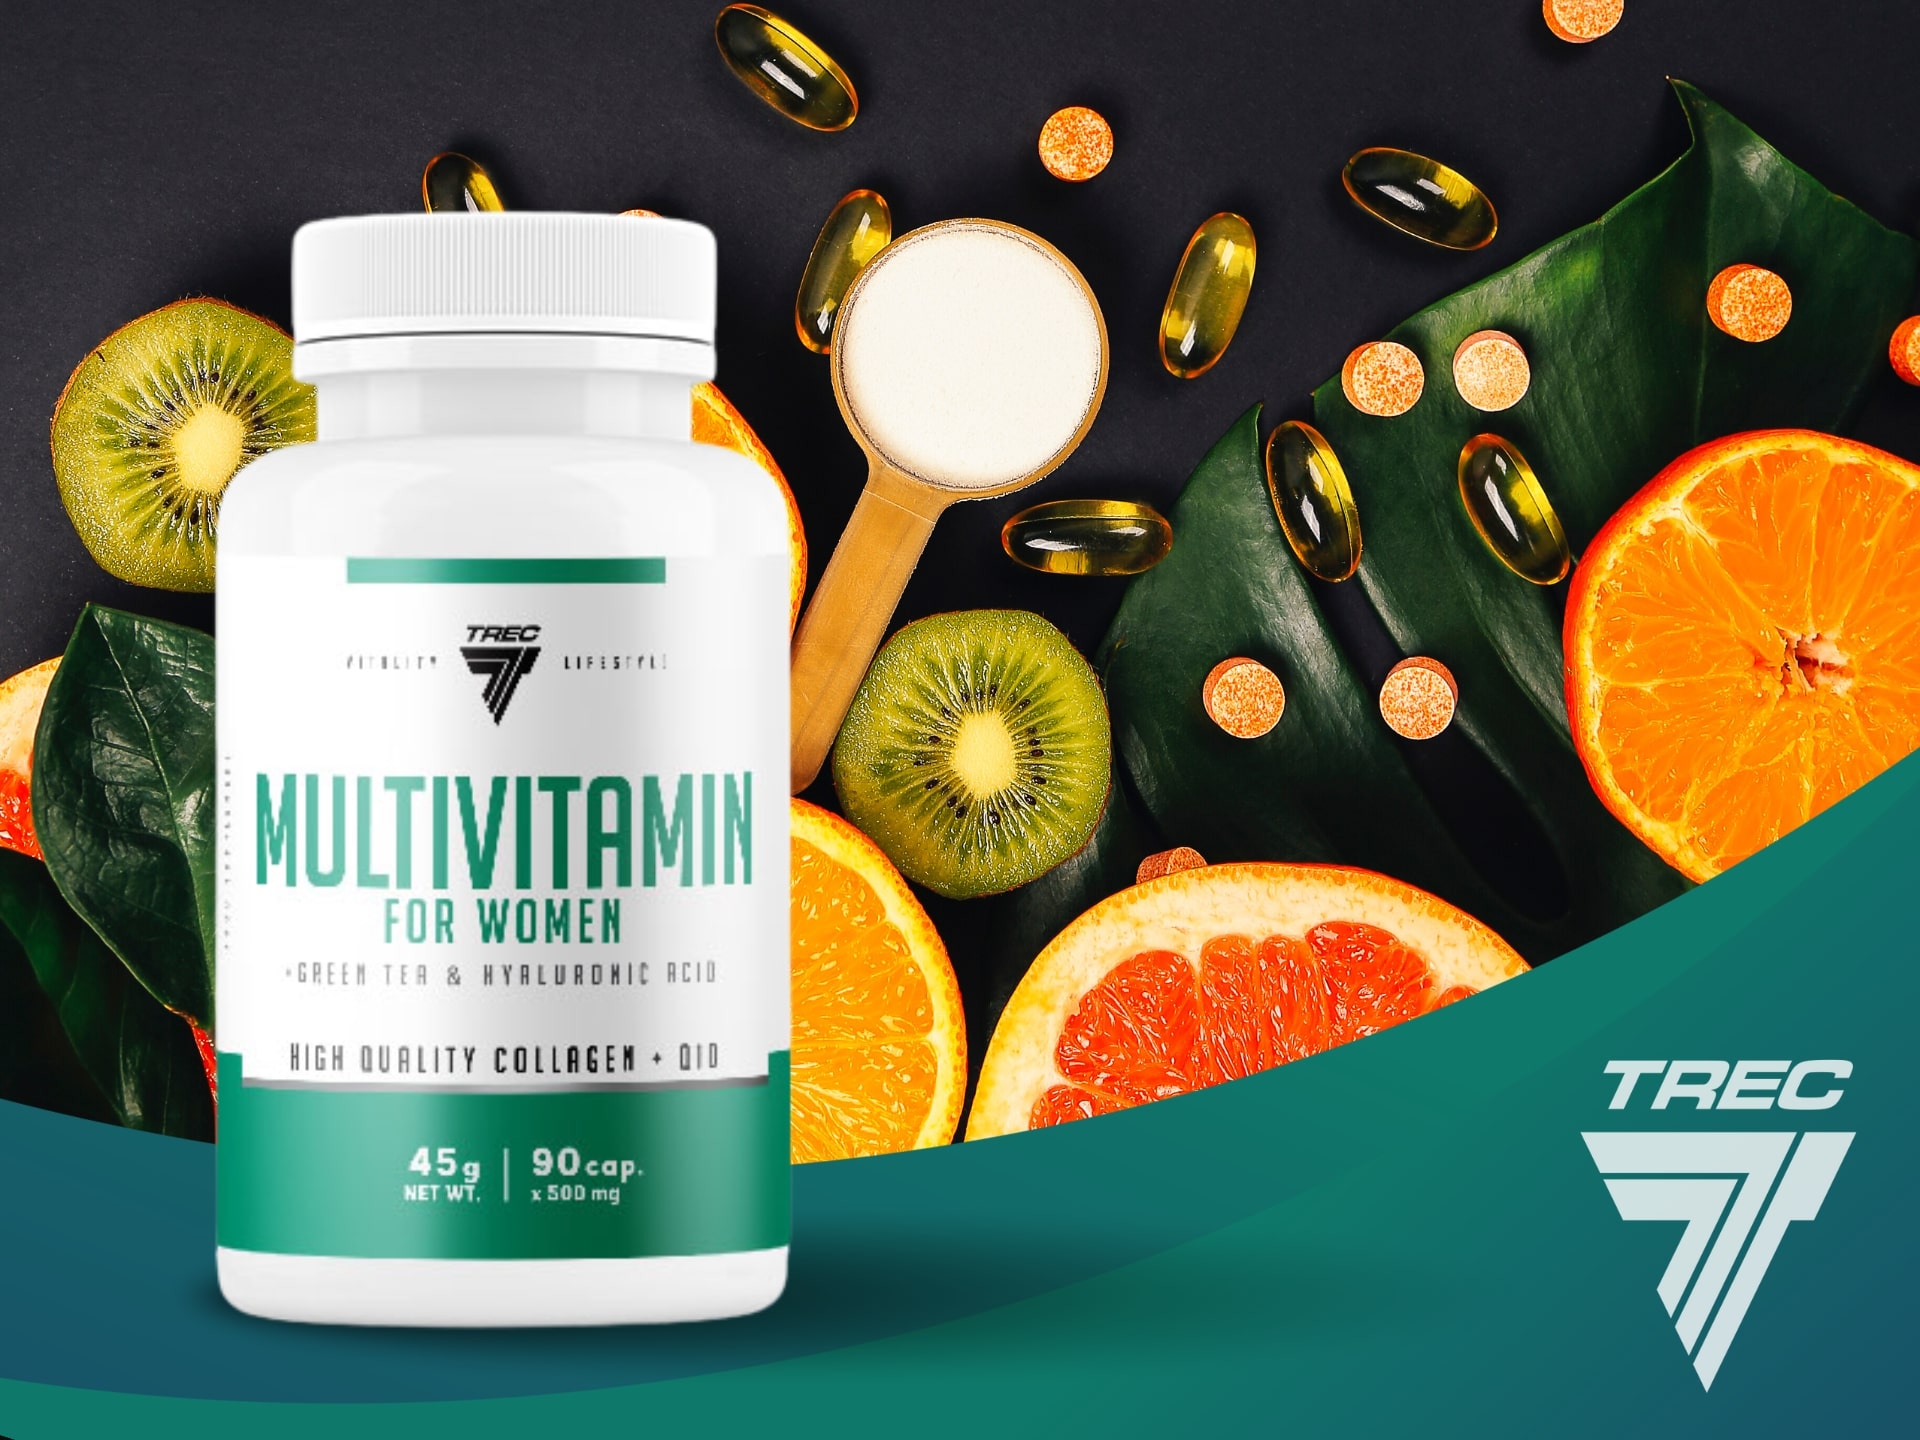 Multivitamin for Women - witaminy specjalnie dla kobiet